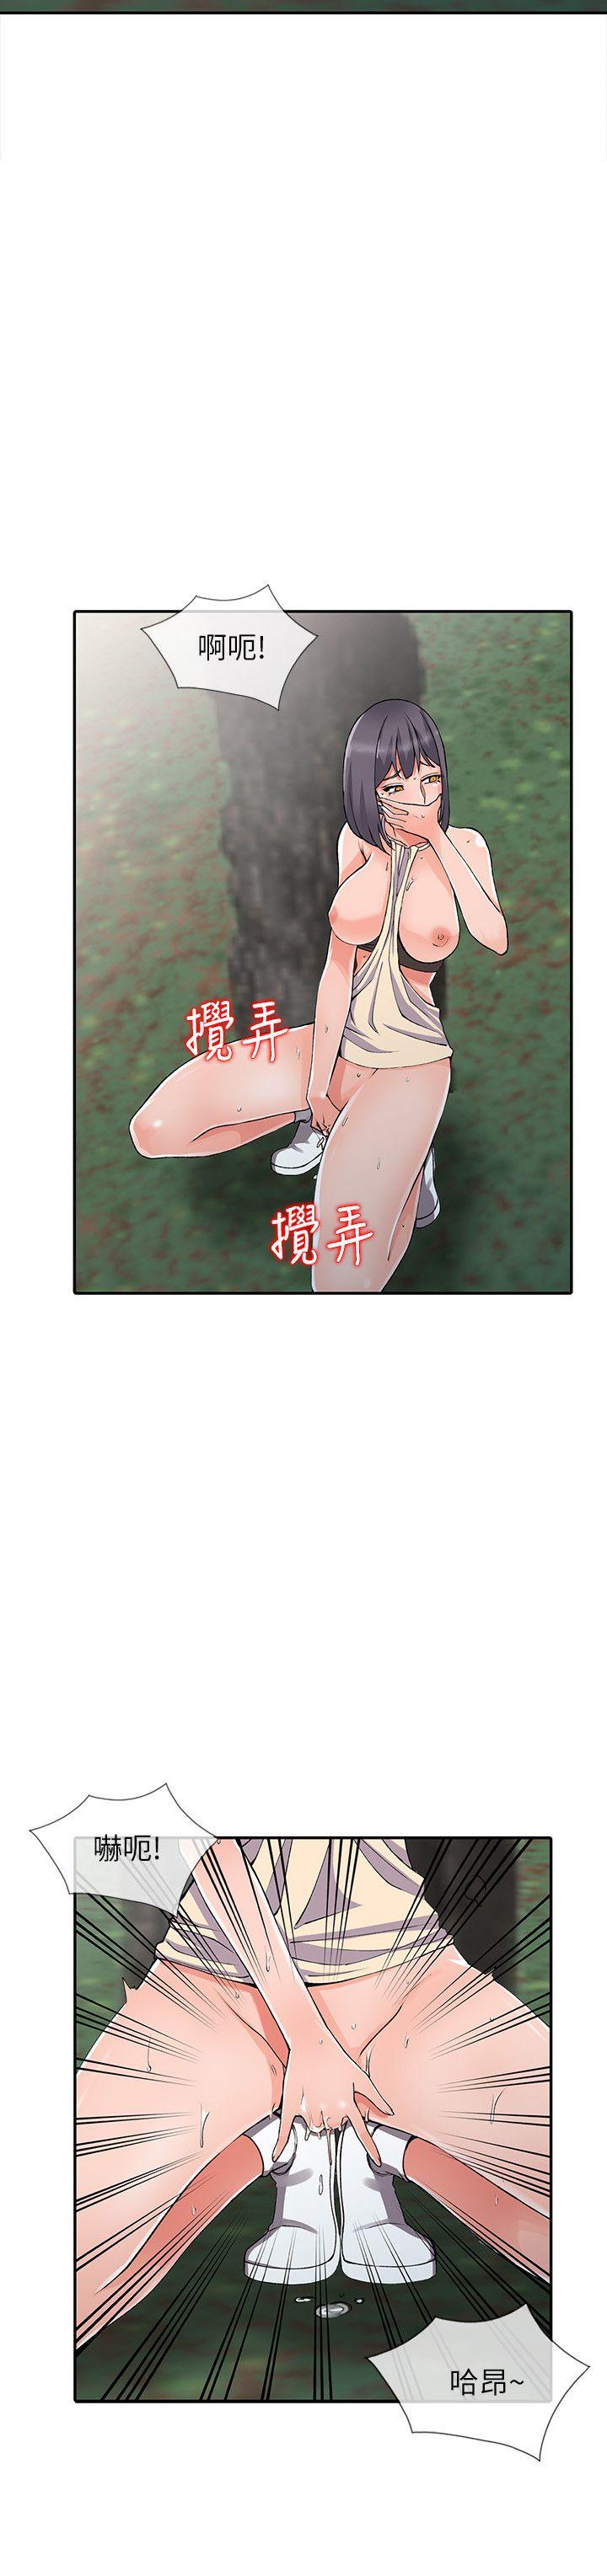 《异乡人:意外桃花源》漫画 第11话-偷窥带来的高潮